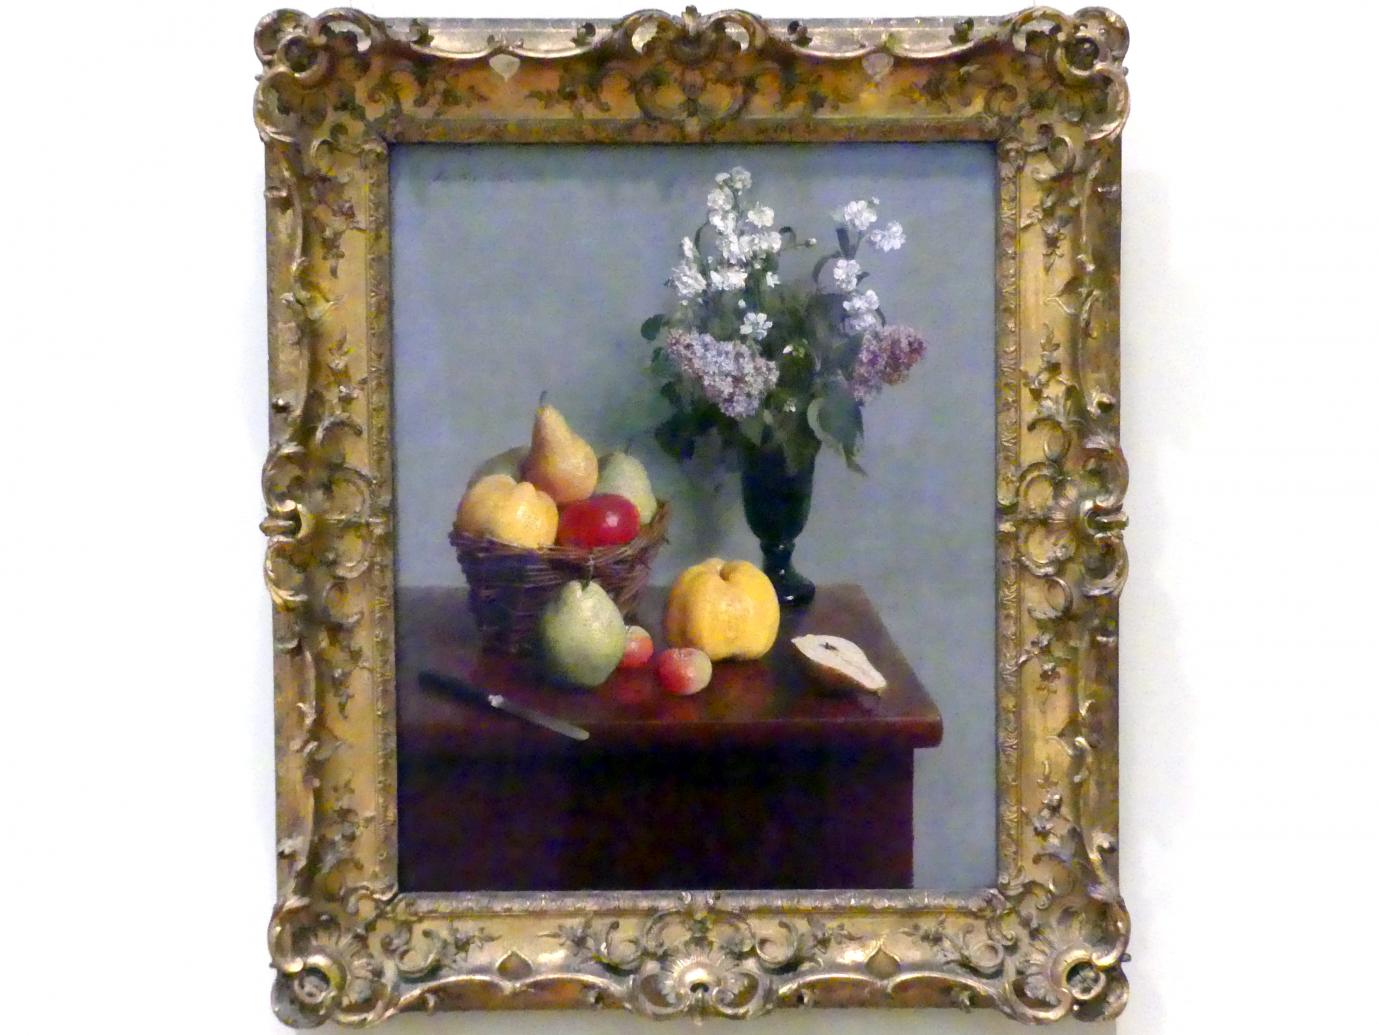 Henri Fantin-Latour (1858–1888), Stillleben mit Blumen und Obst, New York, Metropolitan Museum of Art (Met), Saal 824, 1866, Bild 1/2